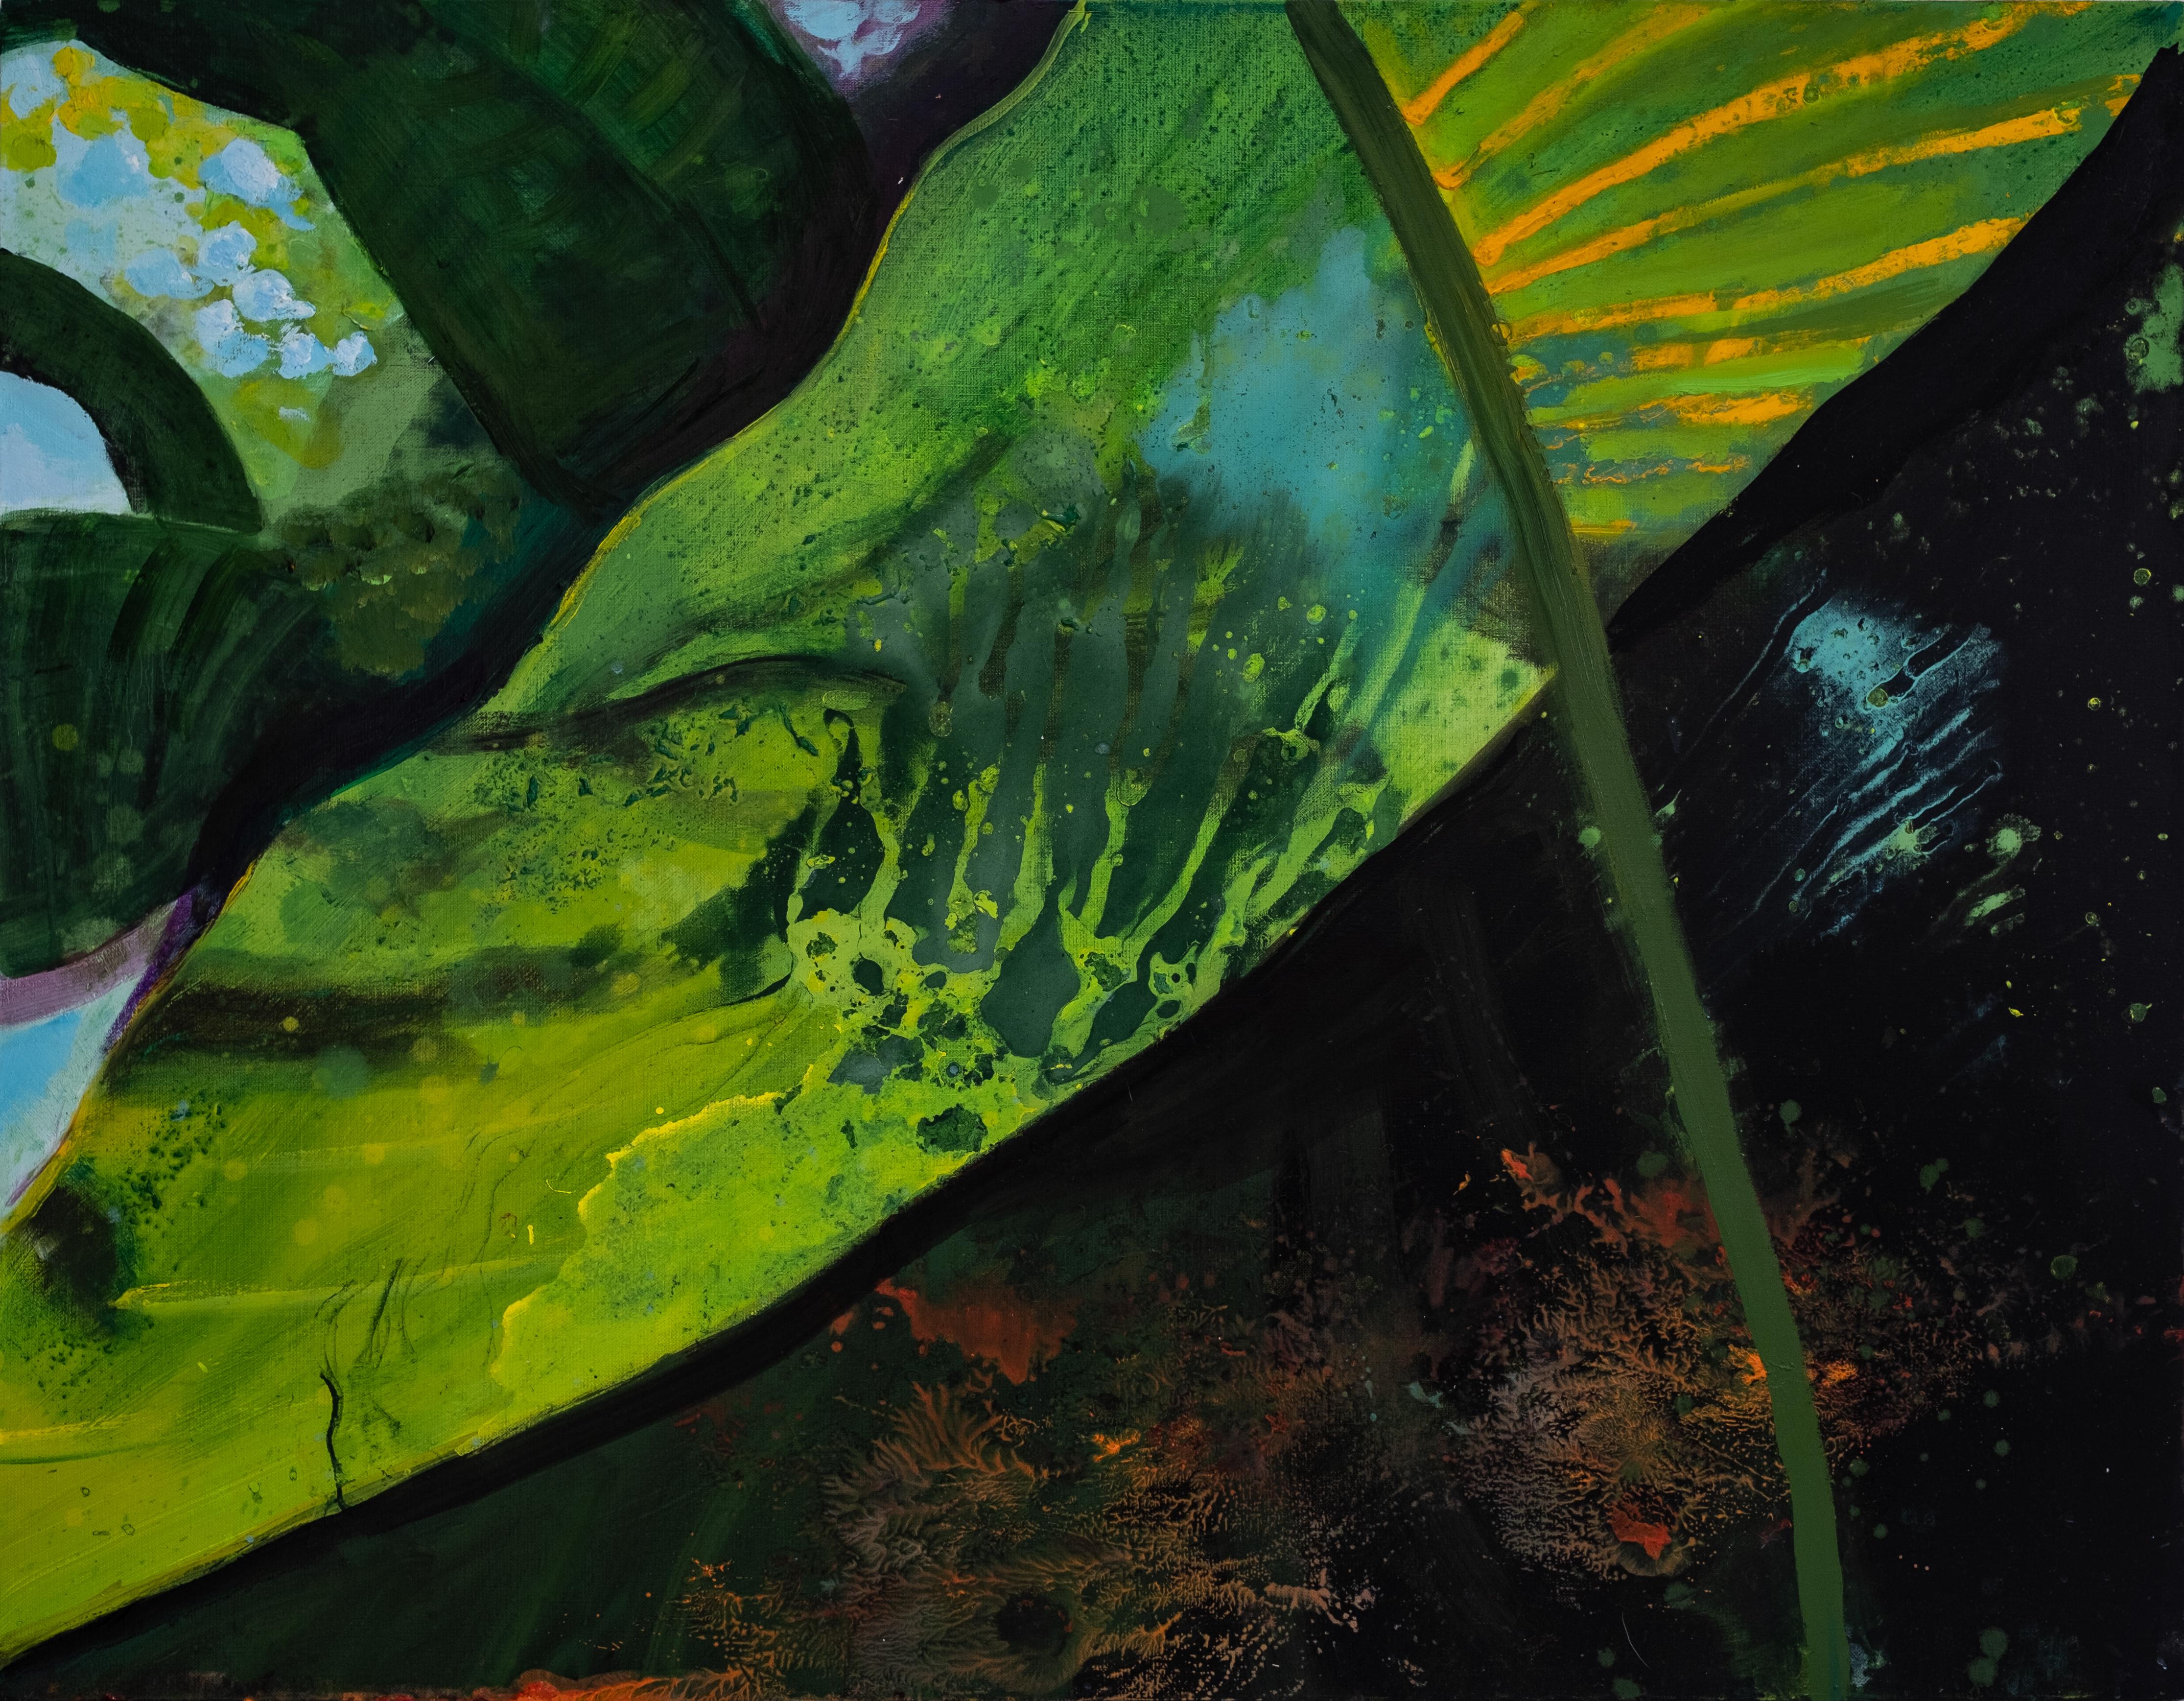 Agnieszka Zawisza Landscape Painting - Botanic Garden 2 -  Contemporary Expressive Landscape Oil Painting, Plant View